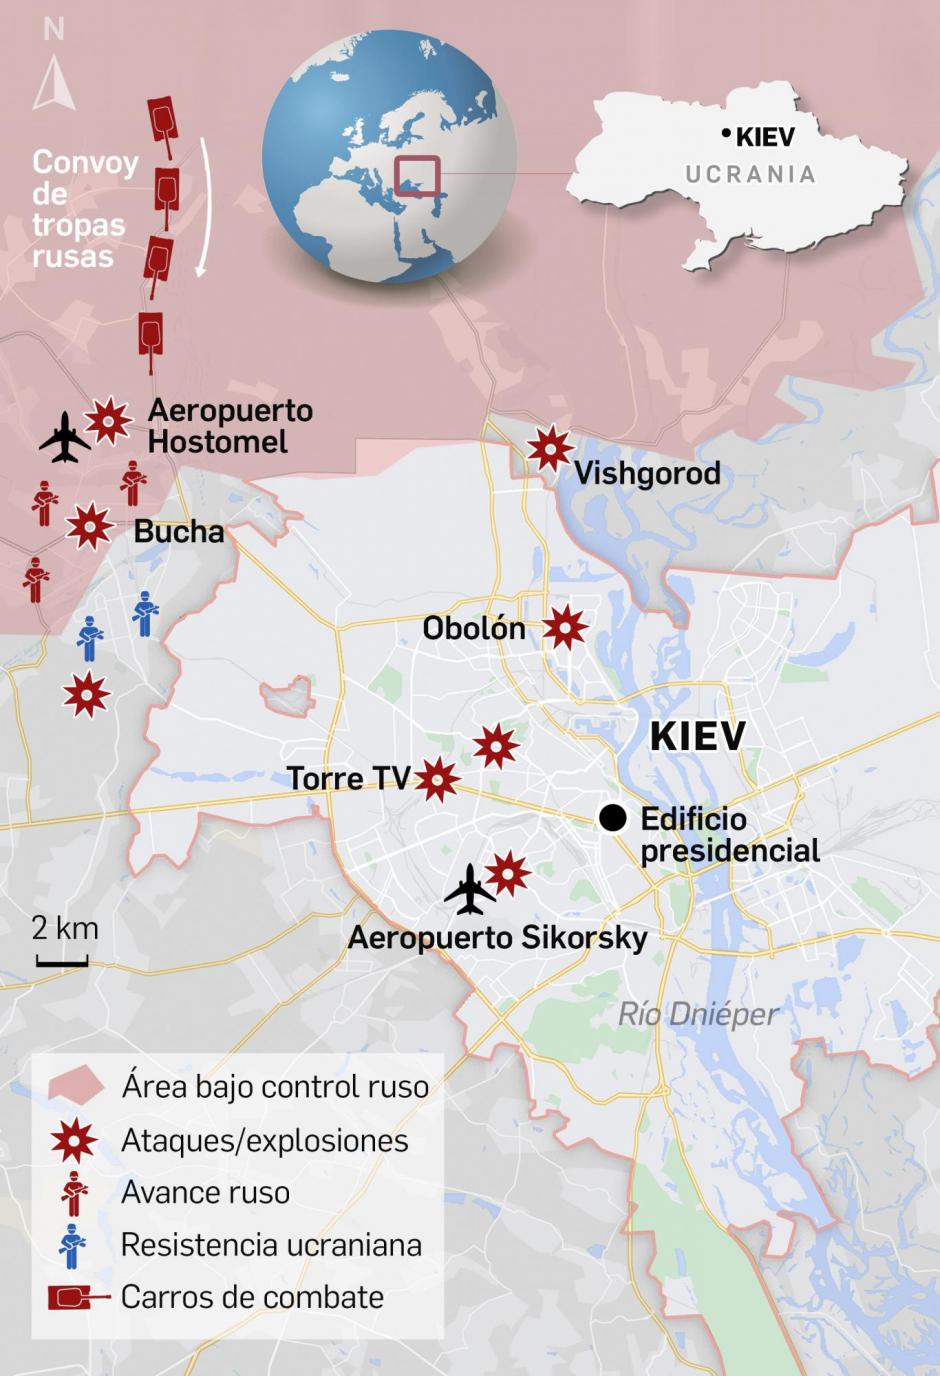 La situación en Kiev en la mañana del 2 de marzo